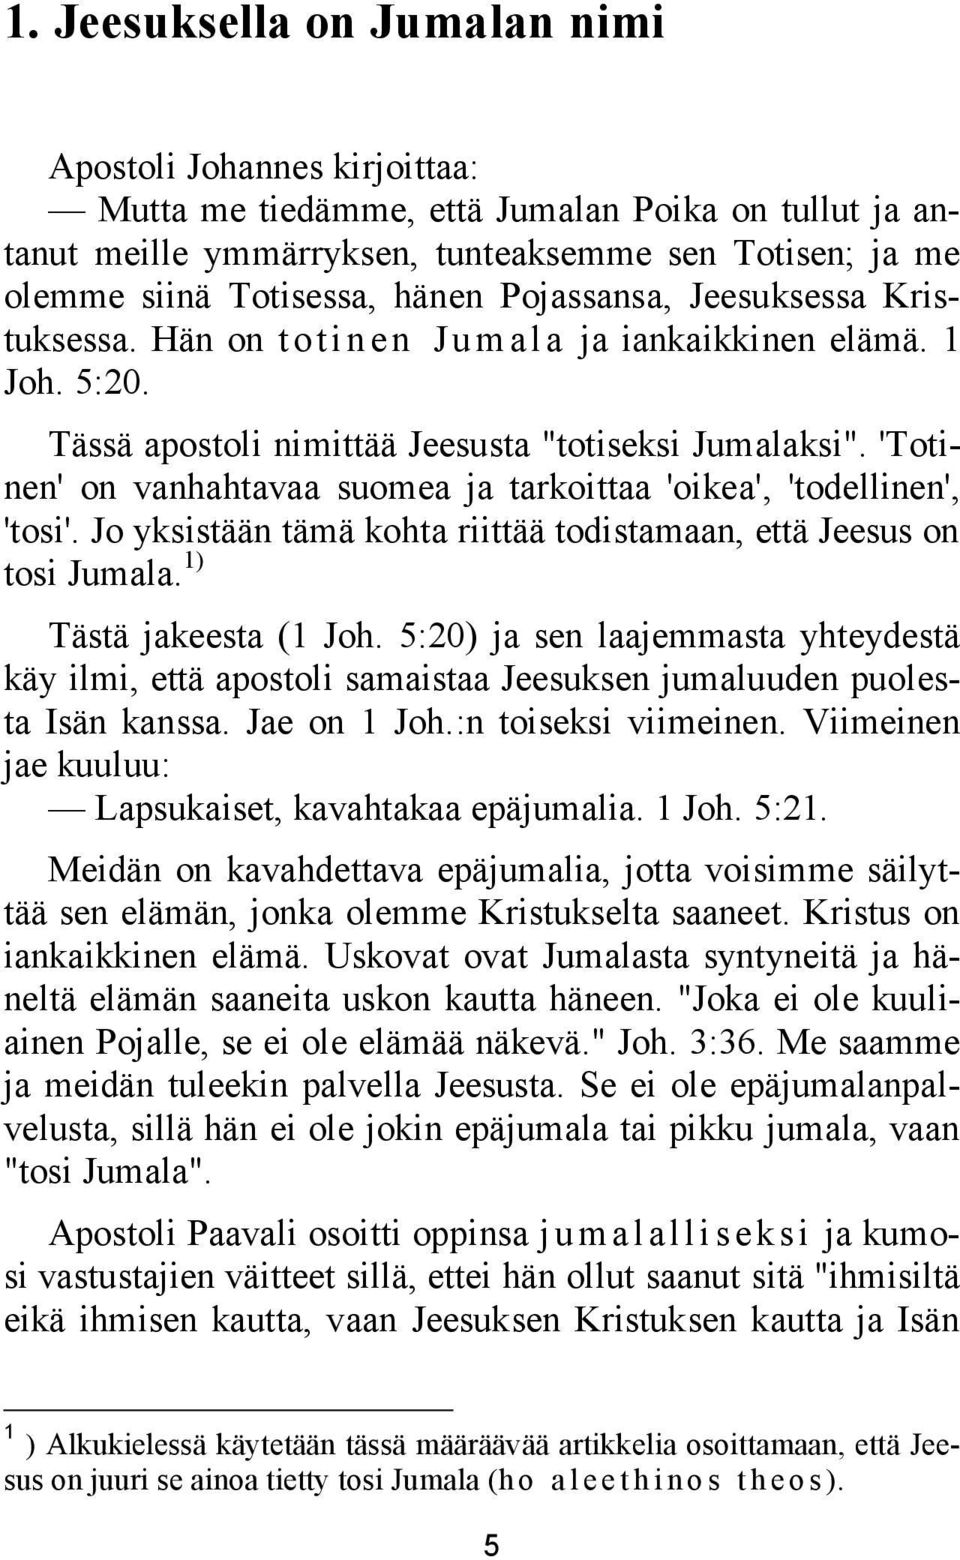 'Totinen' on vanhahtavaa suomea ja tarkoittaa 'oikea', 'todellinen', 'tosi'. Jo yksistään tämä kohta riittää todistamaan, että Jeesus on tosi Jumala. 1) Tästä jakeesta (1 Joh.